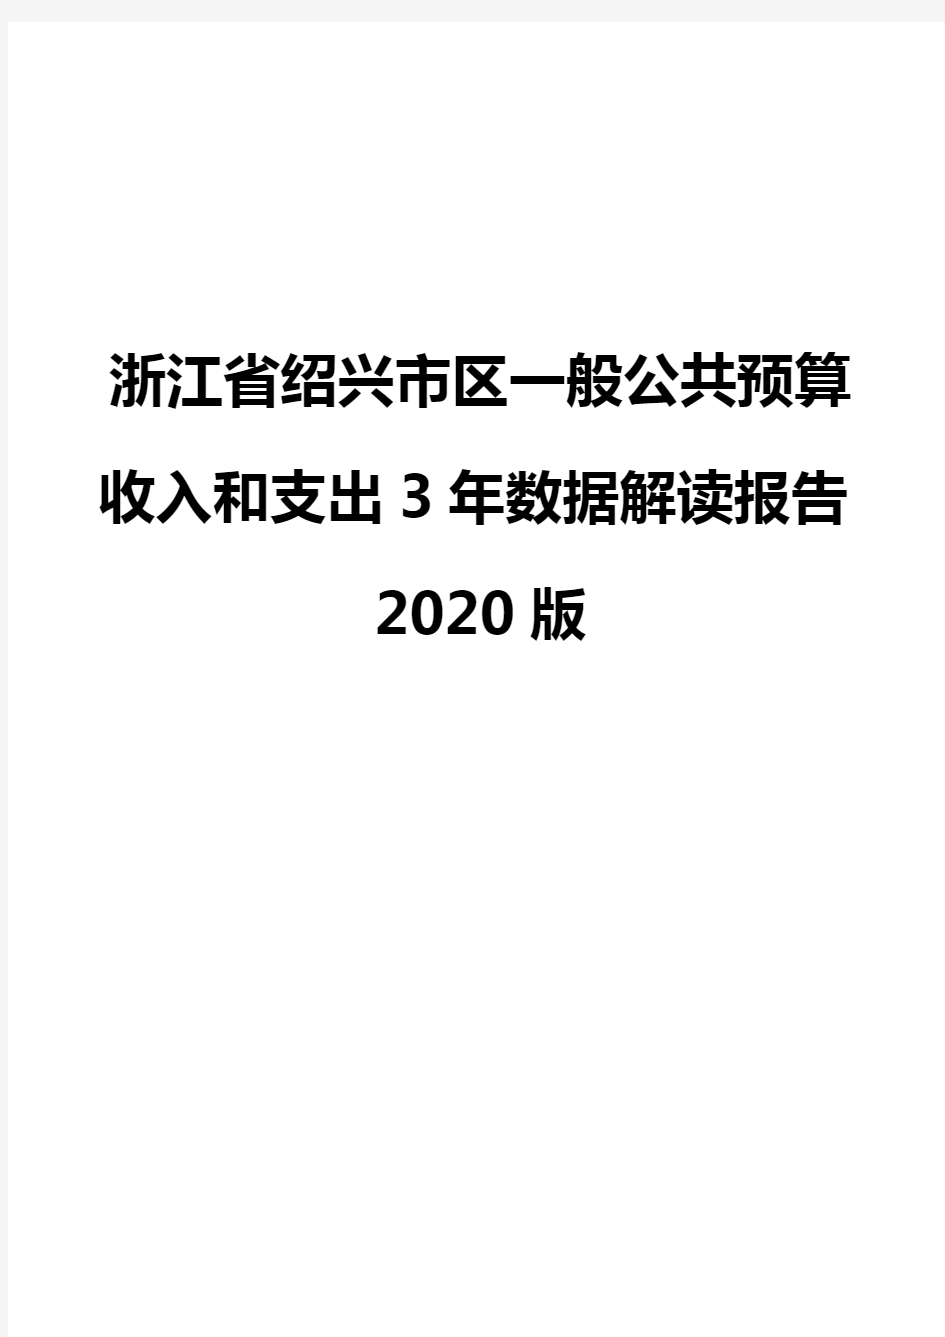 浙江省绍兴市区一般公共预算收入和支出3年数据解读报告2020版